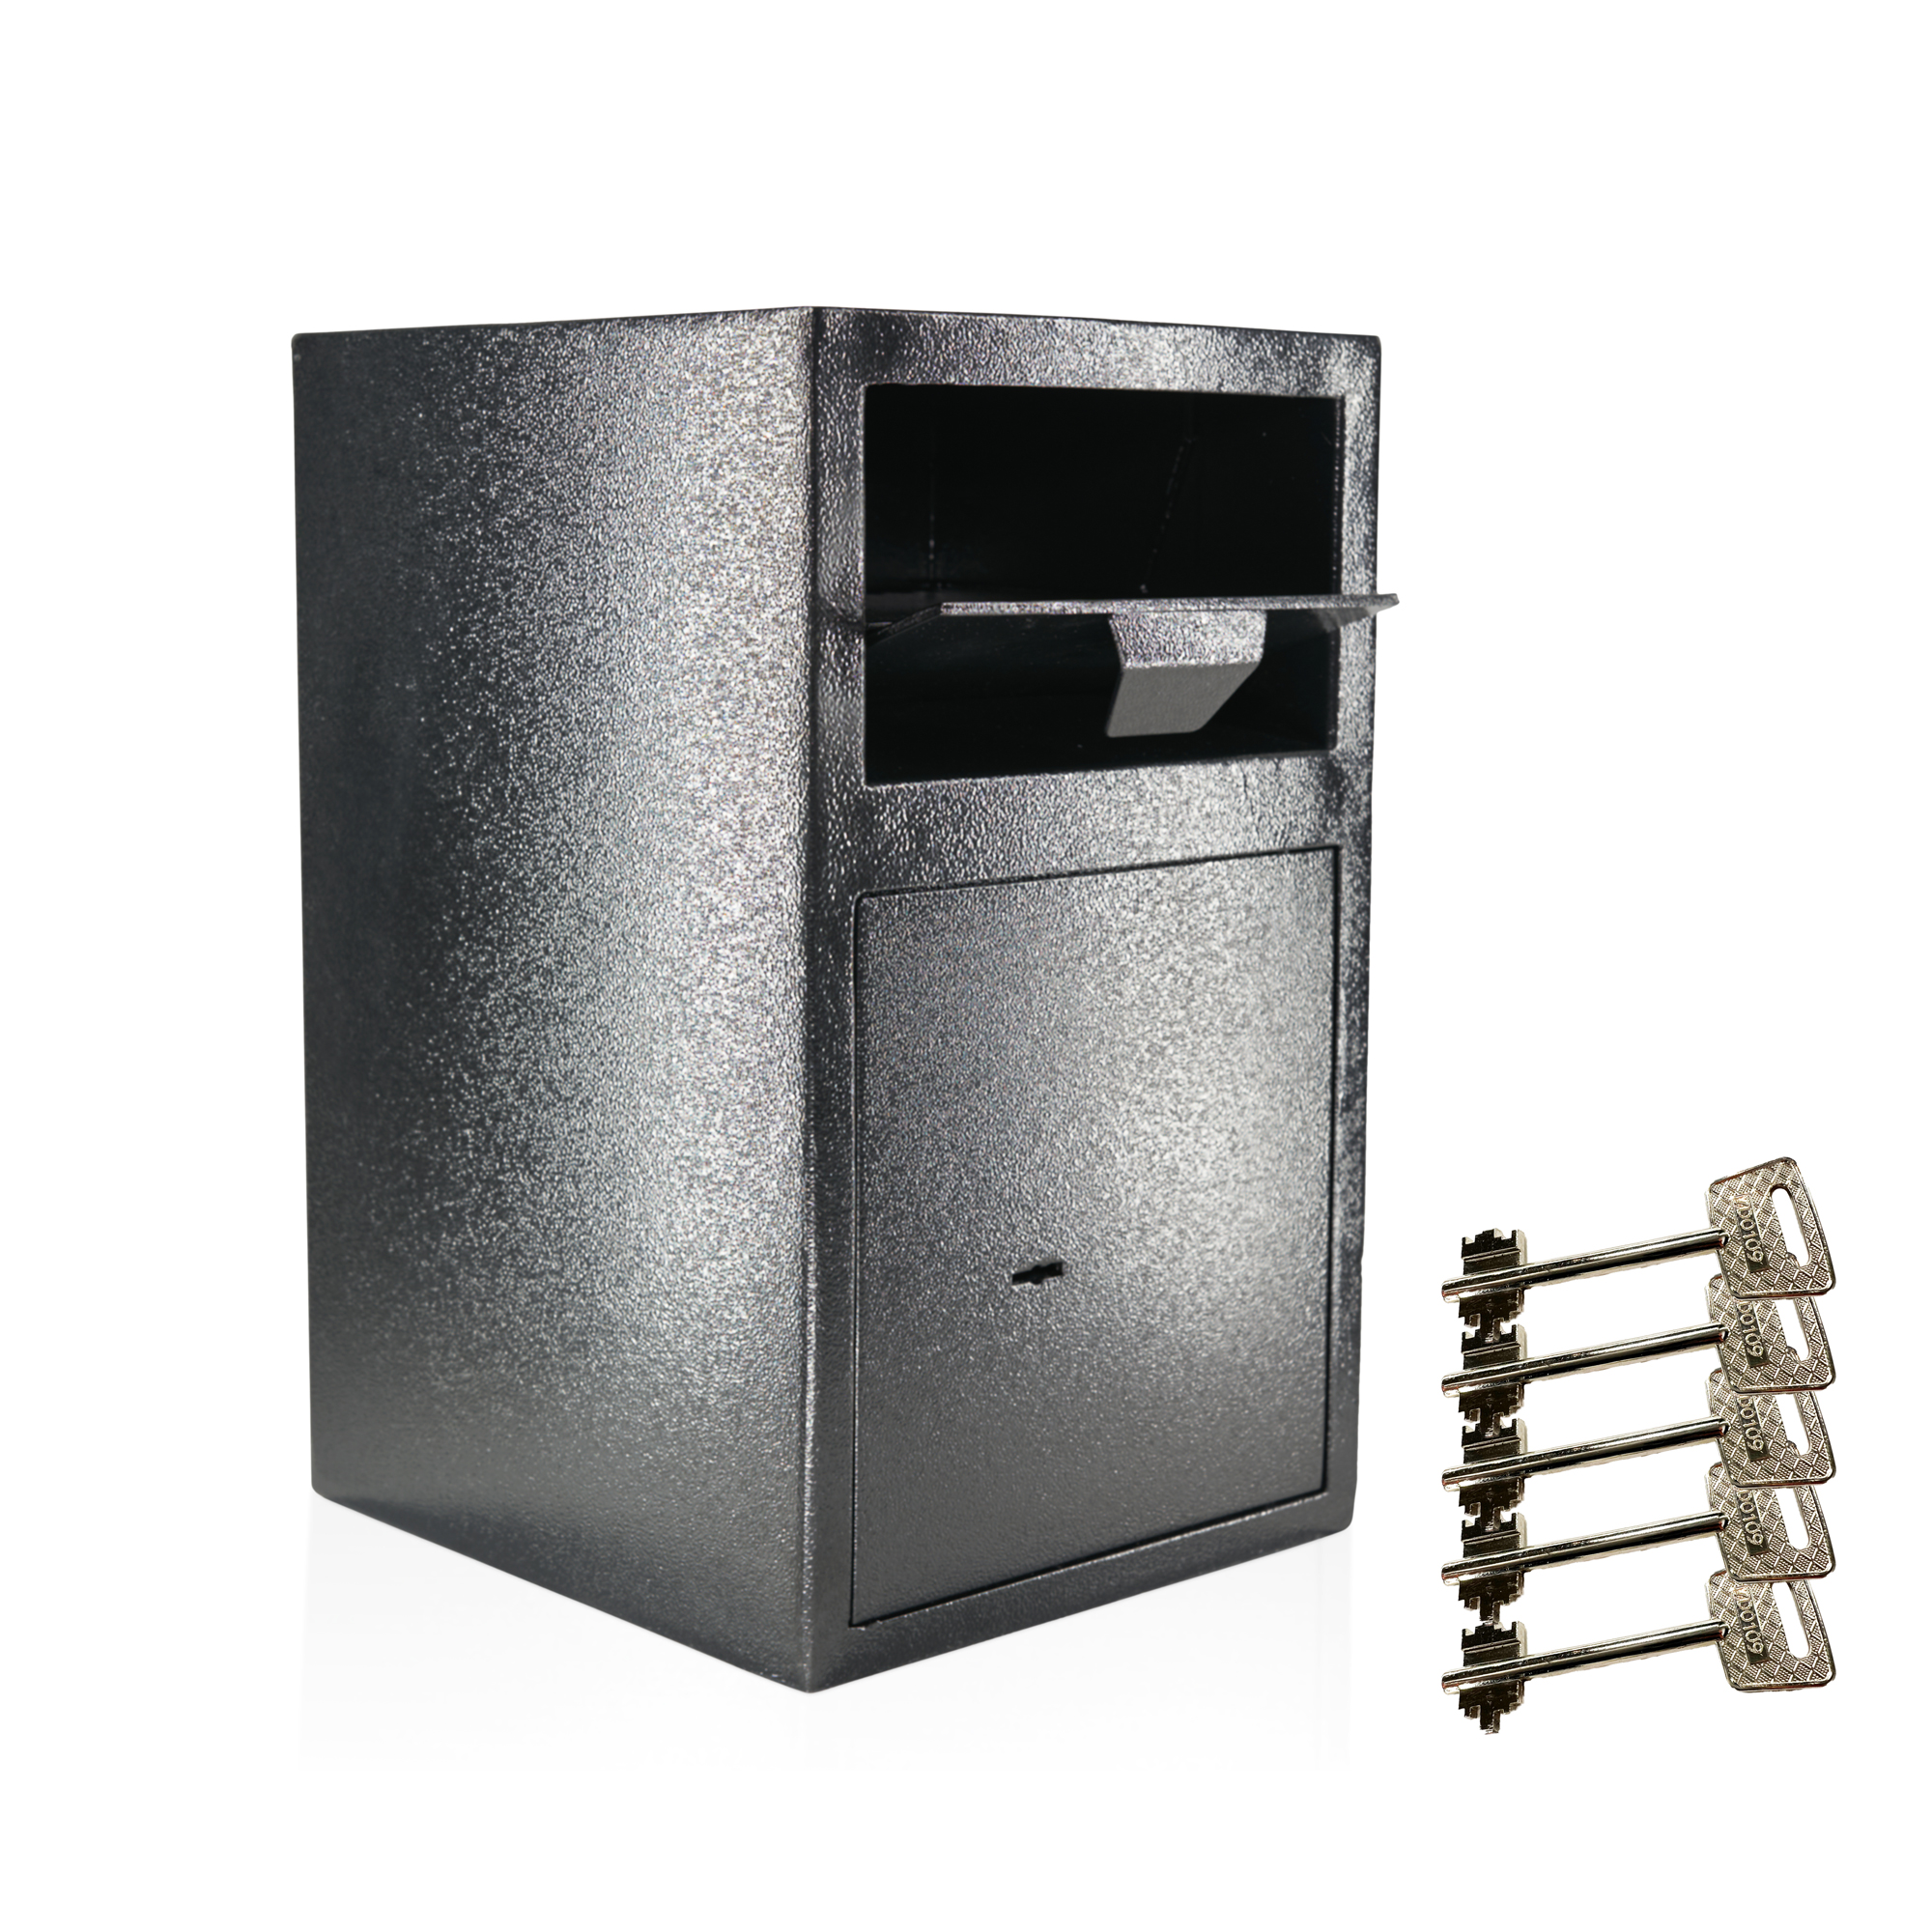 Caja de depósito con solapa de depósito | Caja de seguridad para panadería | Panadería | Incluye 5 llaves